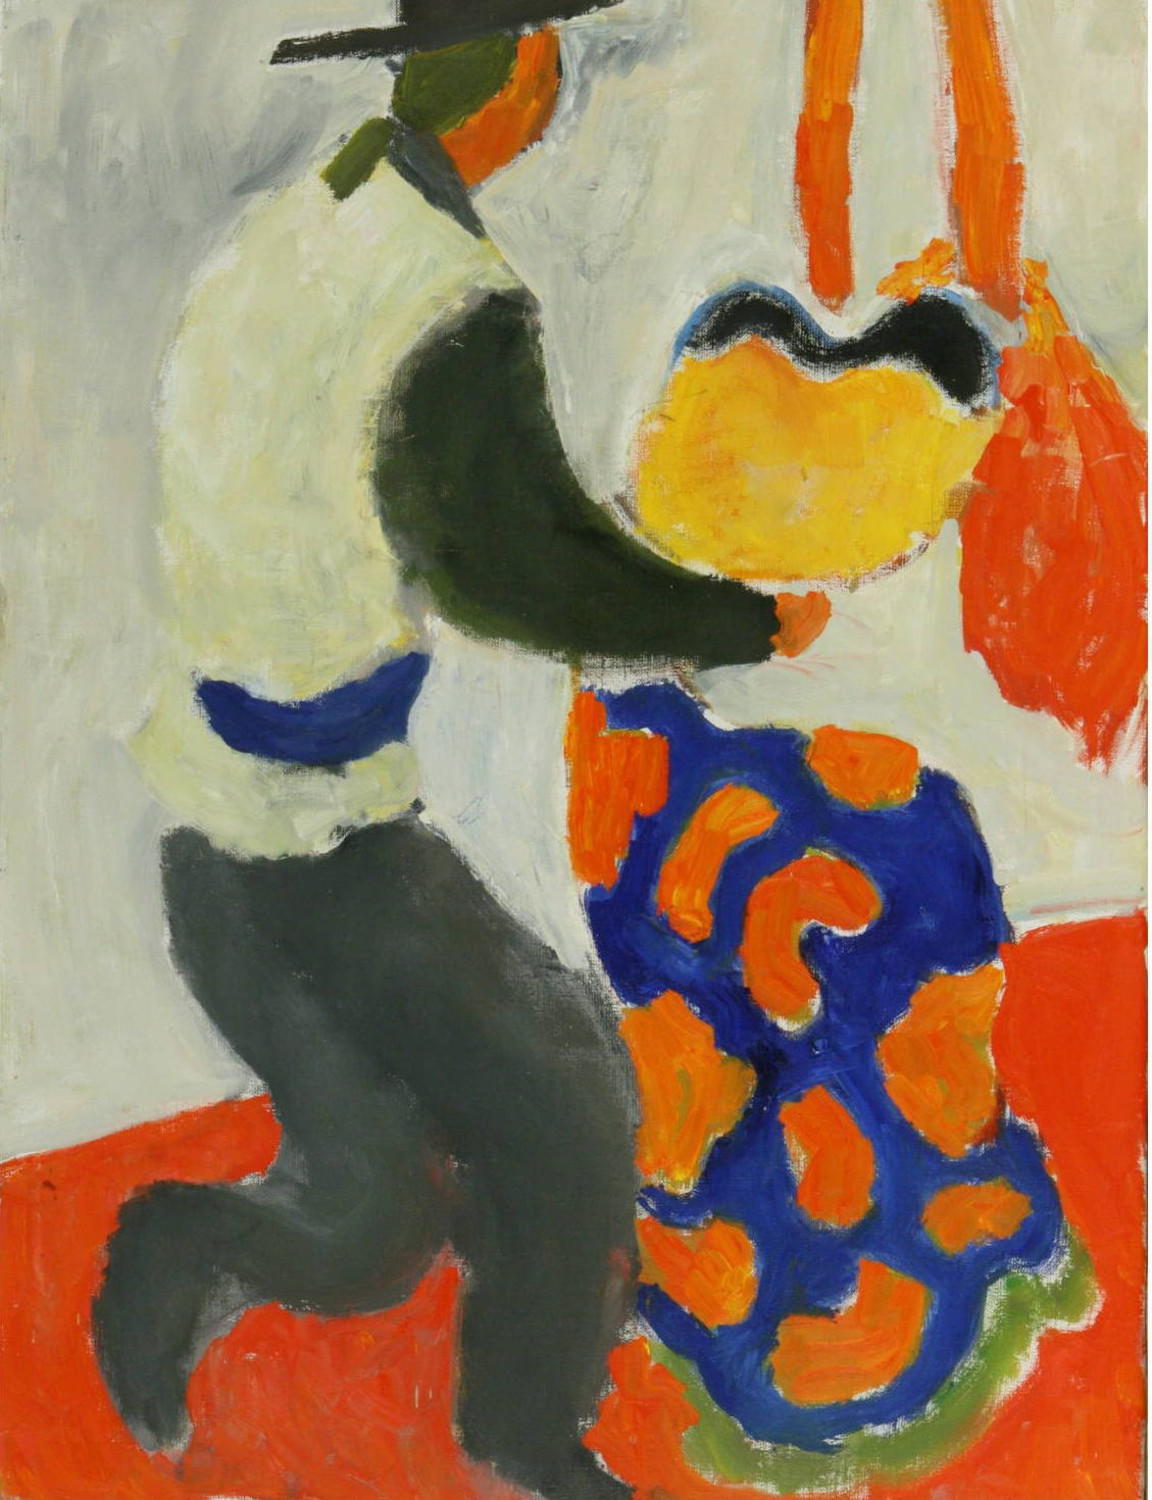 Танец  (Обновленная коллекция). Амир Тимергалеев. 2009, холст, масло, 60x80